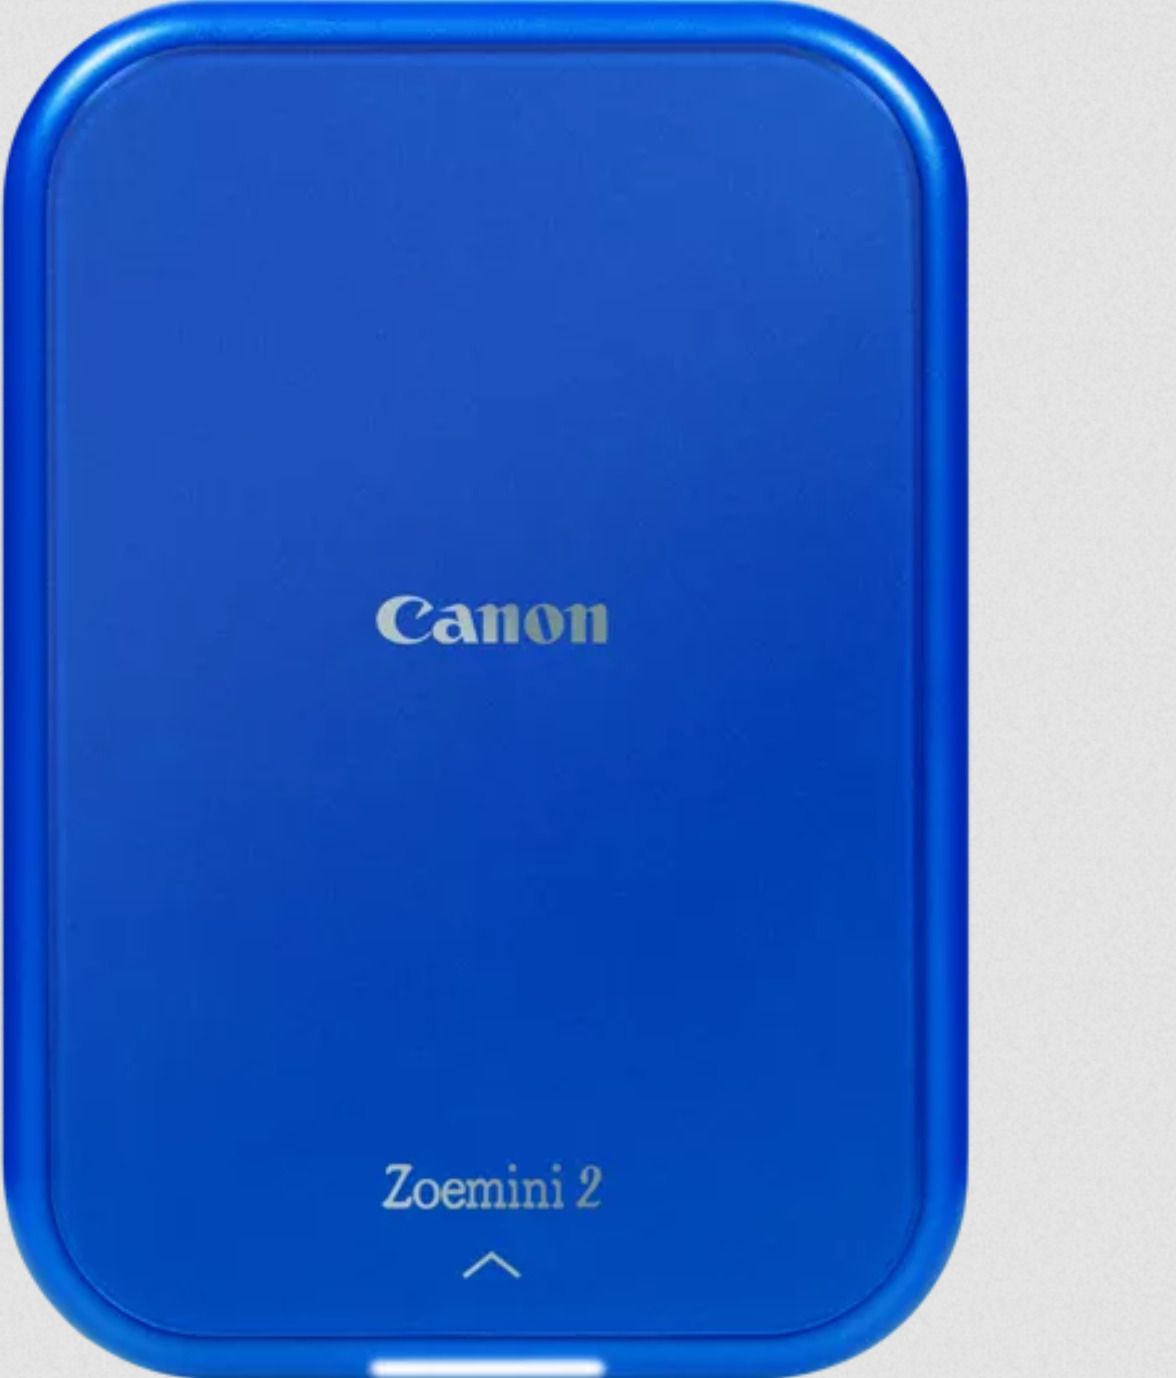 CANON Zoemini 2 - Marine blue